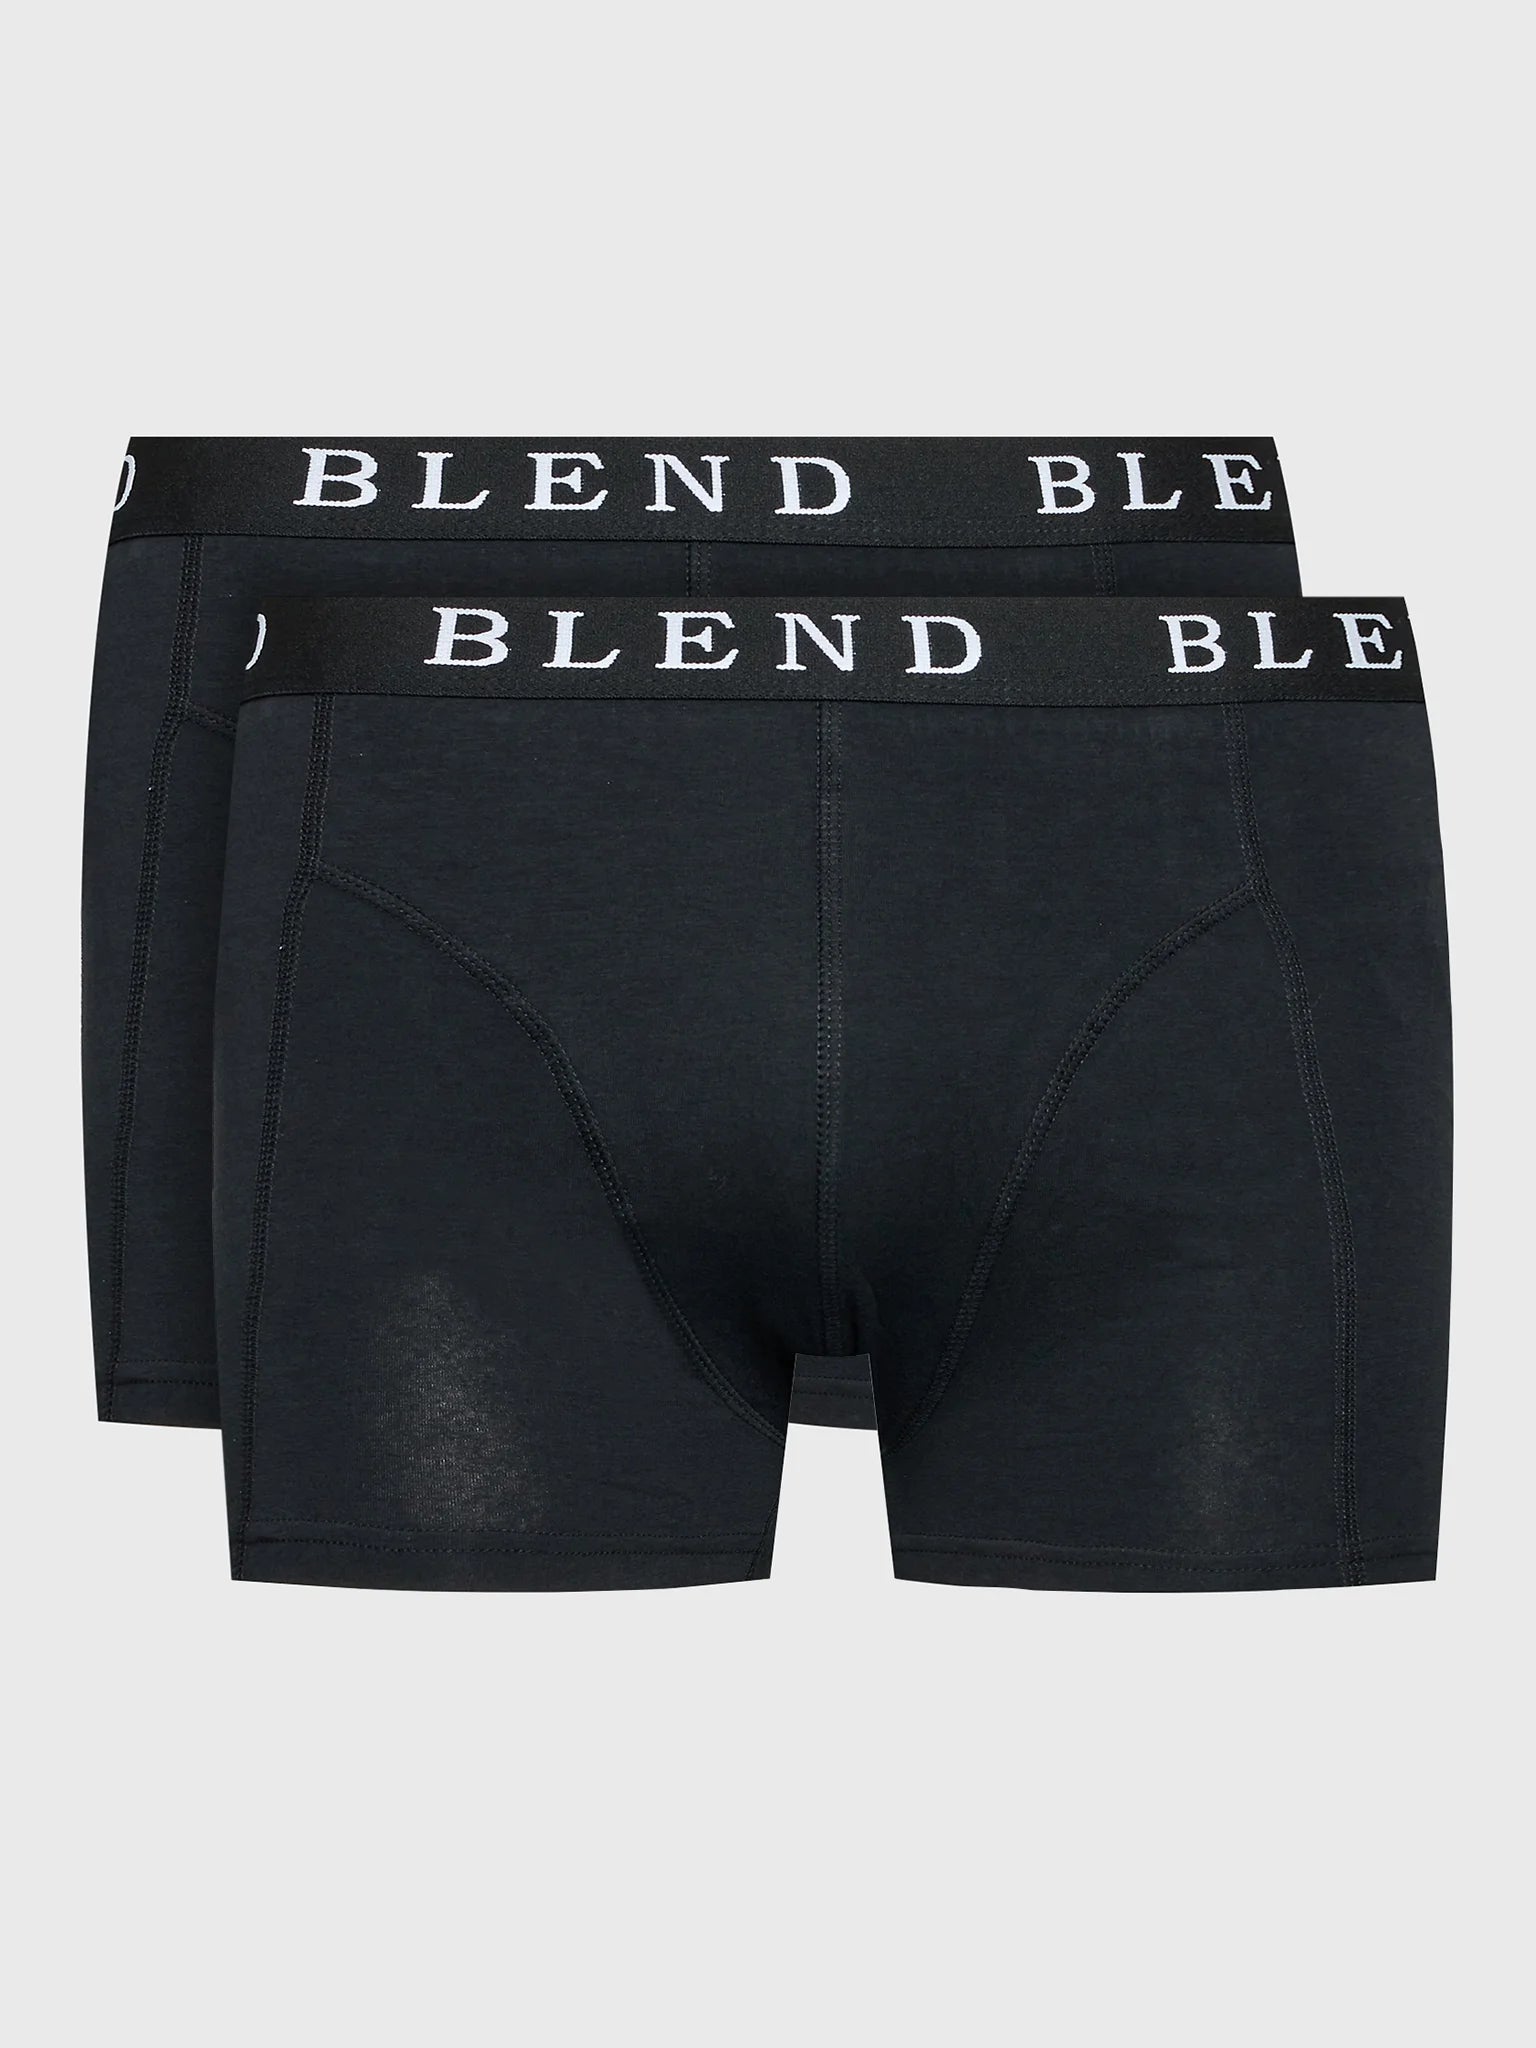 BHNED underwear 2-pack